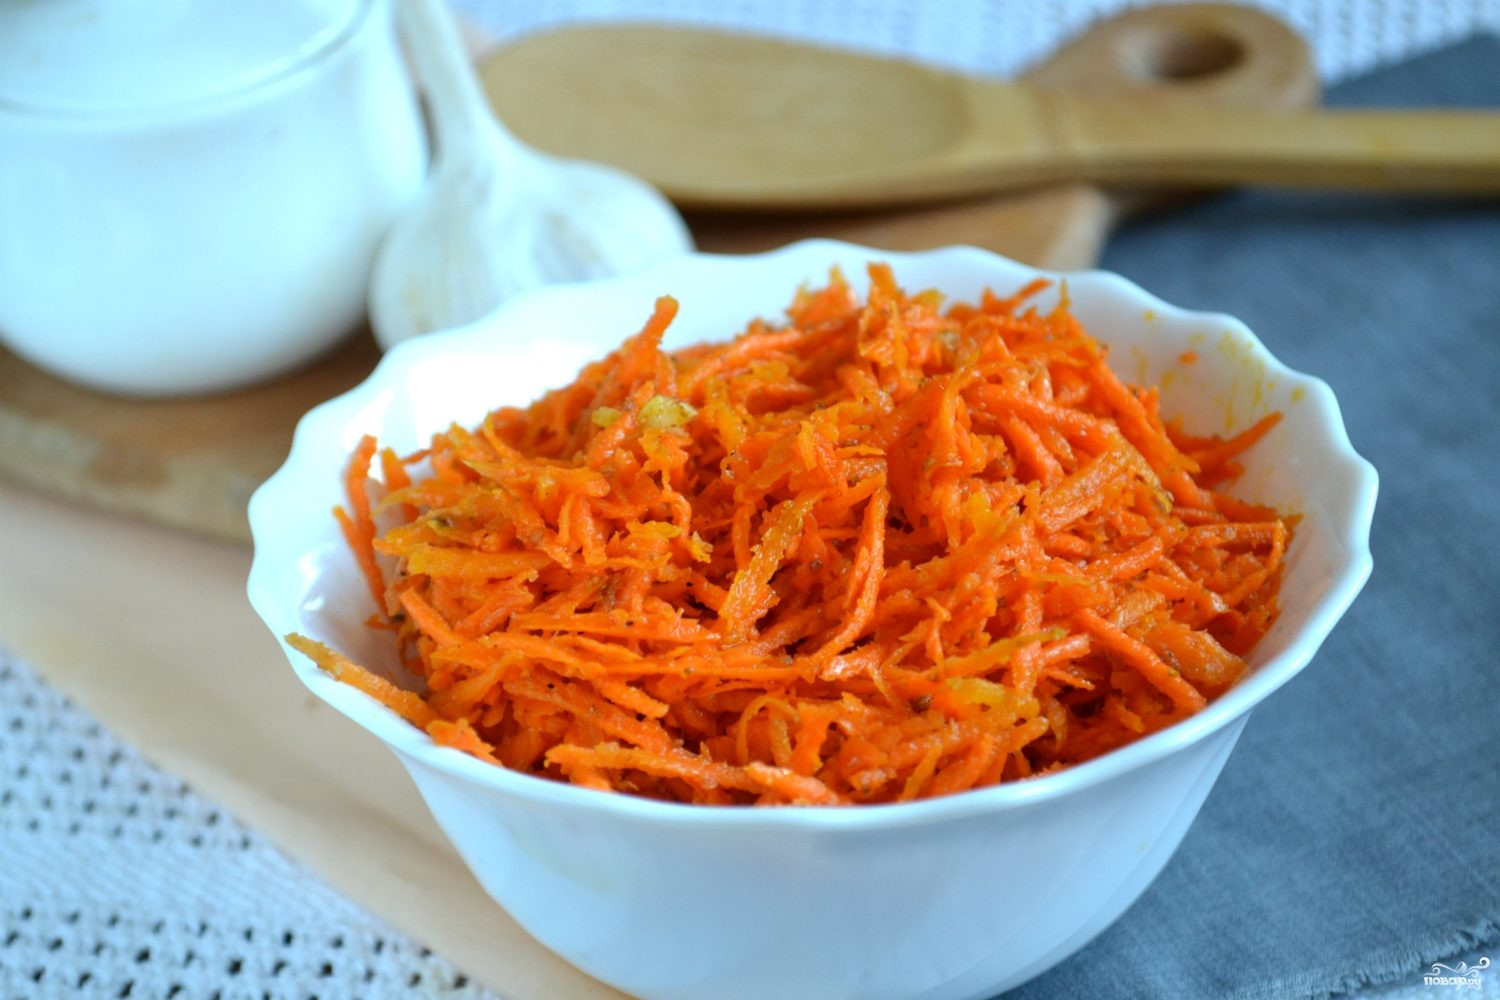 Рецепт вкусной моркови по корейски в домашних условиях с приправой фото